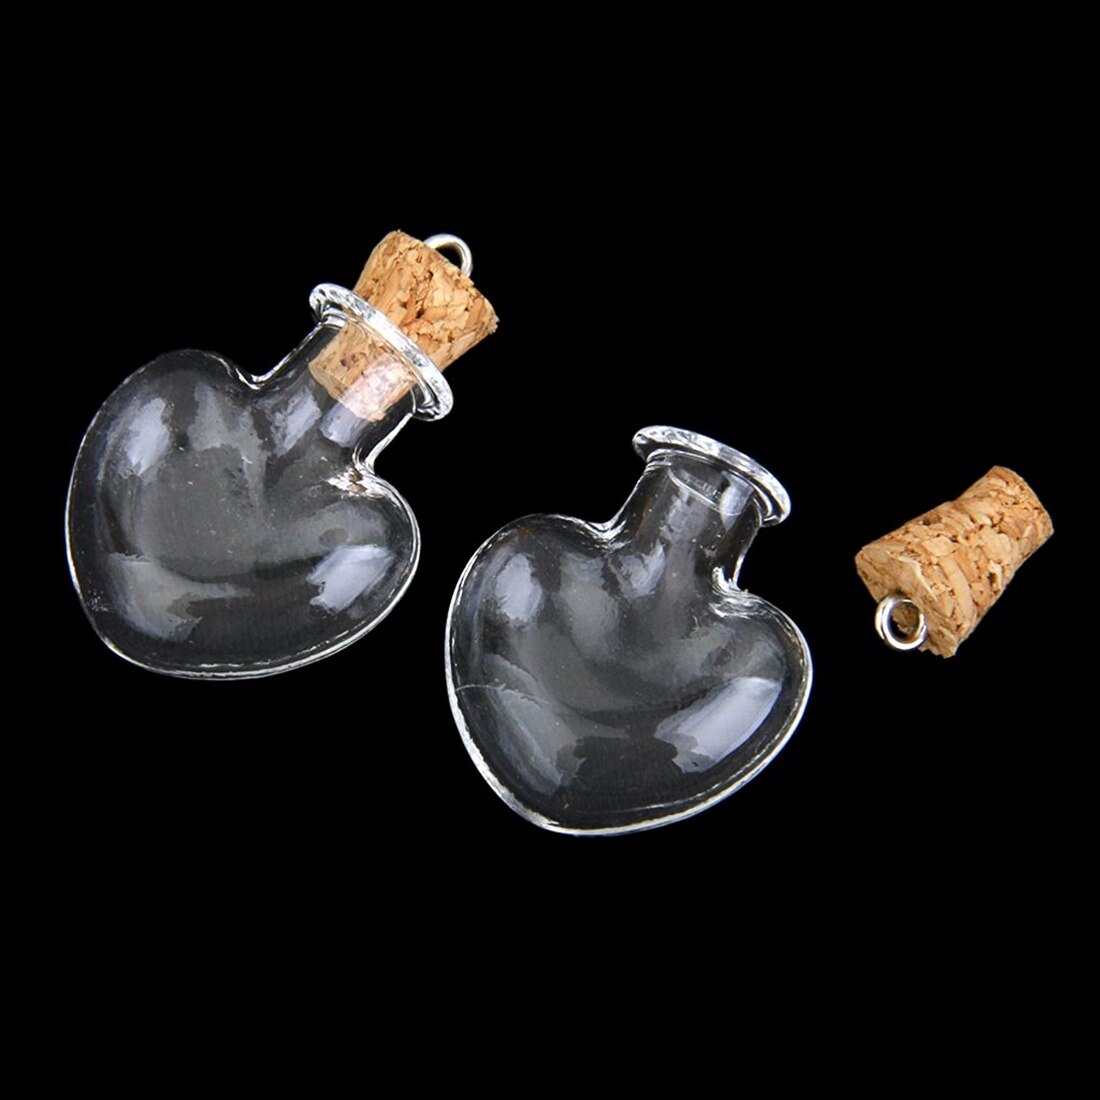 10 stk korkprop lille tom glasflaske bittesmå glaskrukker glas ampuller uldflaske vedhæng hjerteform bryllup